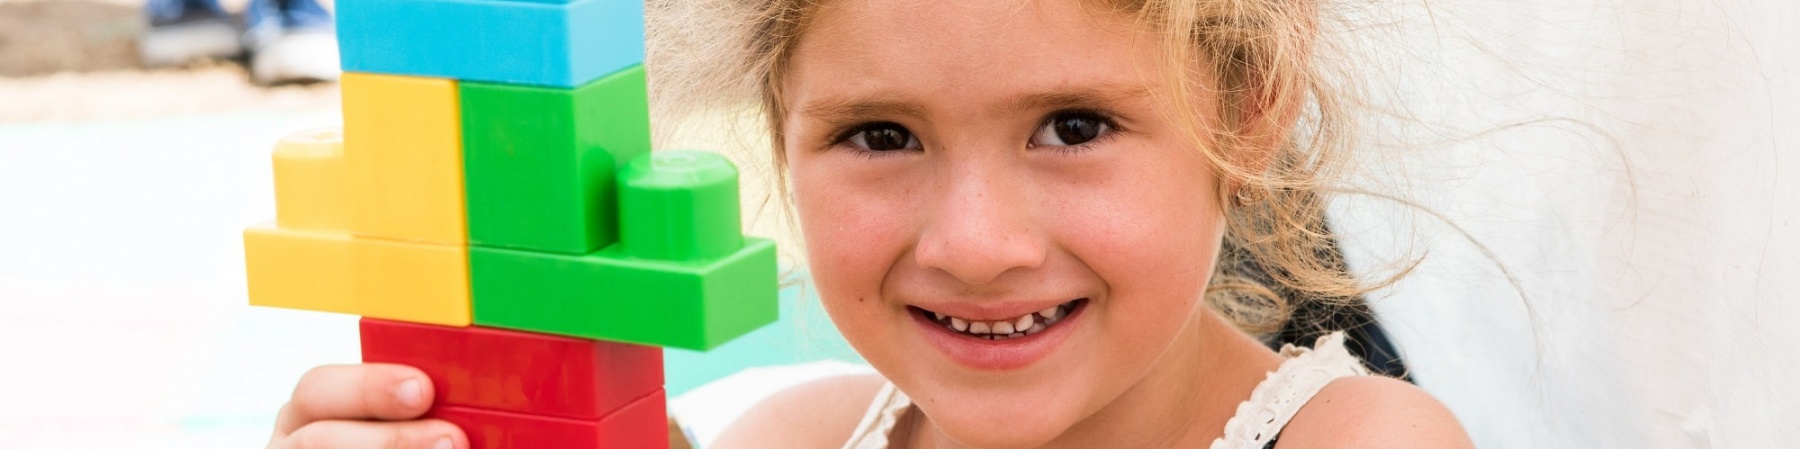 bambina sorridente con in mano una costruzione fatta di Lego colorati